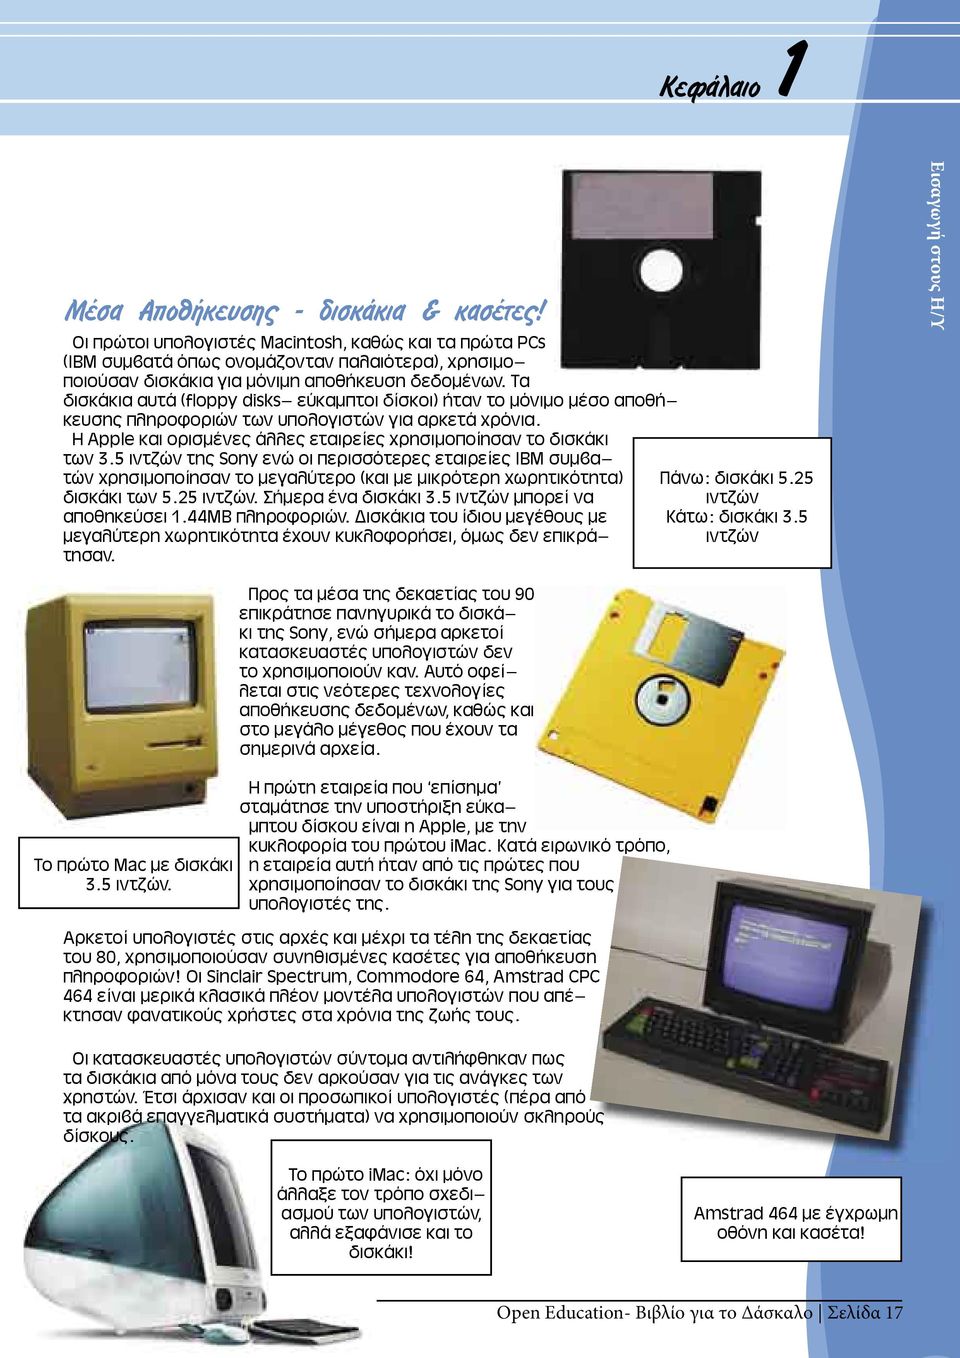 Τα δισκάκια αυτά (floppy disks- εύκαμπτοι δίσκοι) ήταν το μόνιμο μέσο αποθήκευσης πληροφοριών των υπολογιστών για αρκετά χρόνια. Η Apple και ορισμένες άλλες εταιρείες χρησιμοποίησαν το δισκάκι των 3.